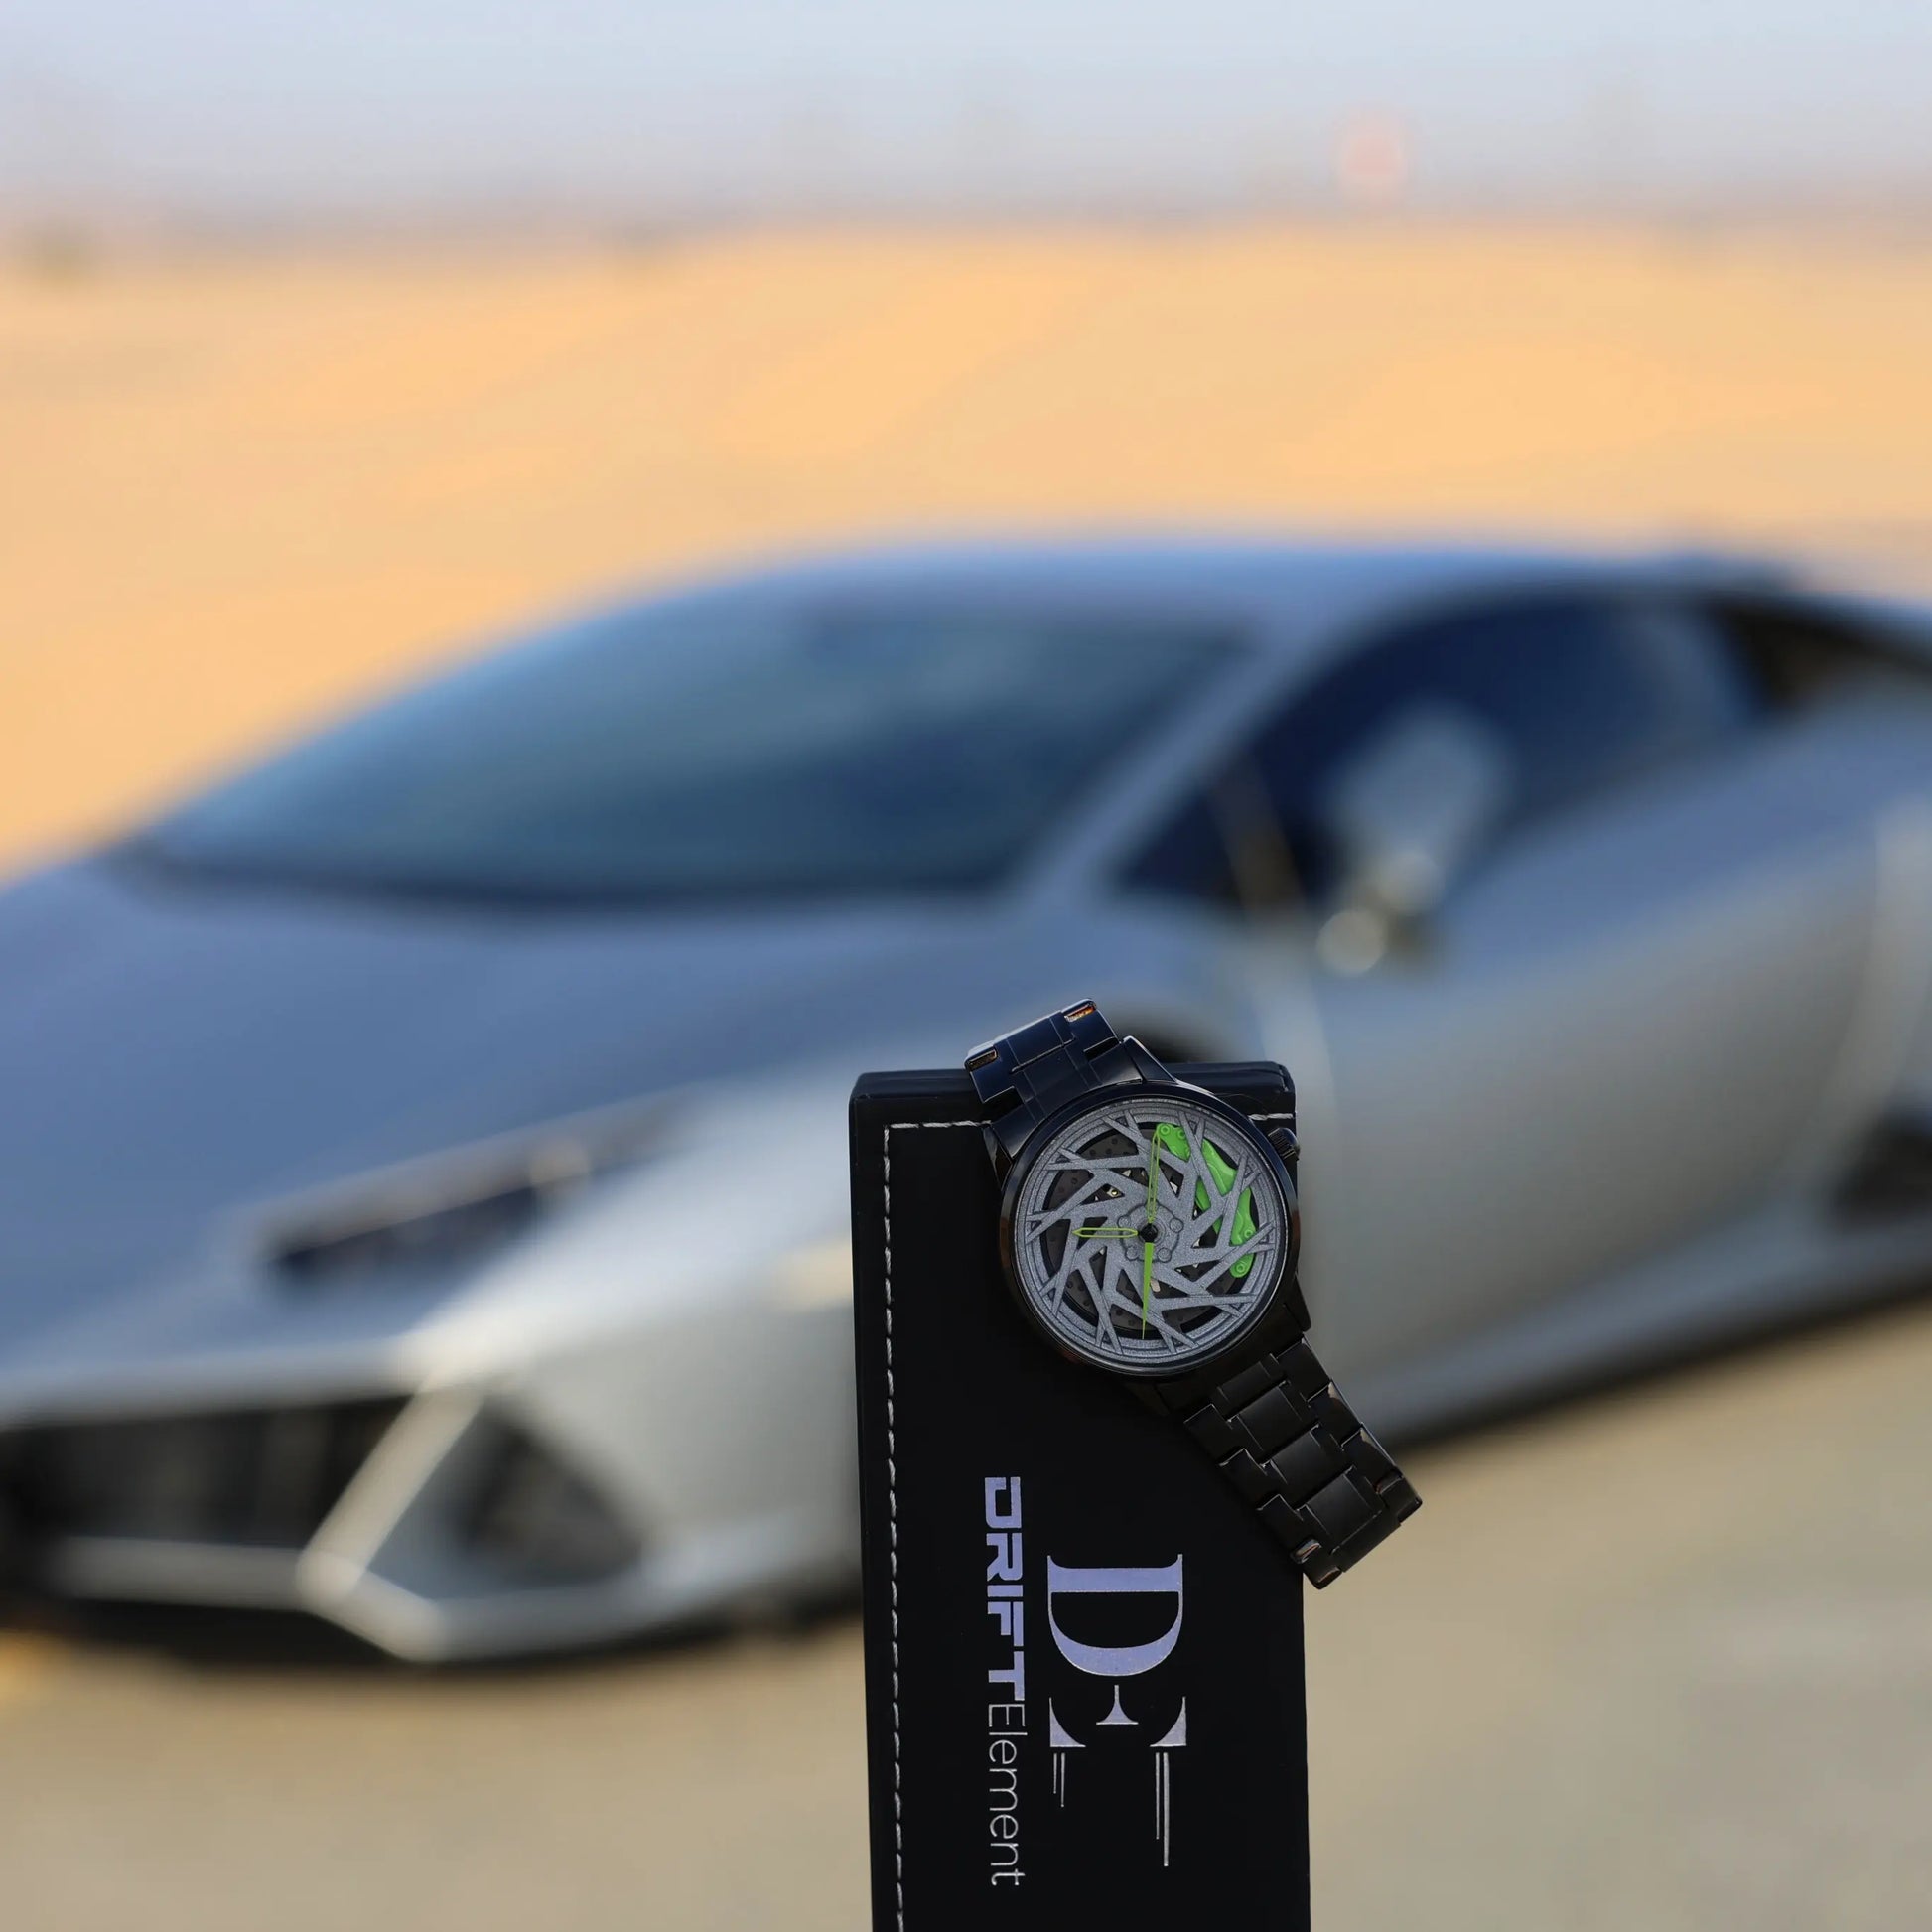 Erleben Sie die Zeit neu mit unserer Rotor Edition-Uhr mit der innovativen Driftelement Rimwatch.